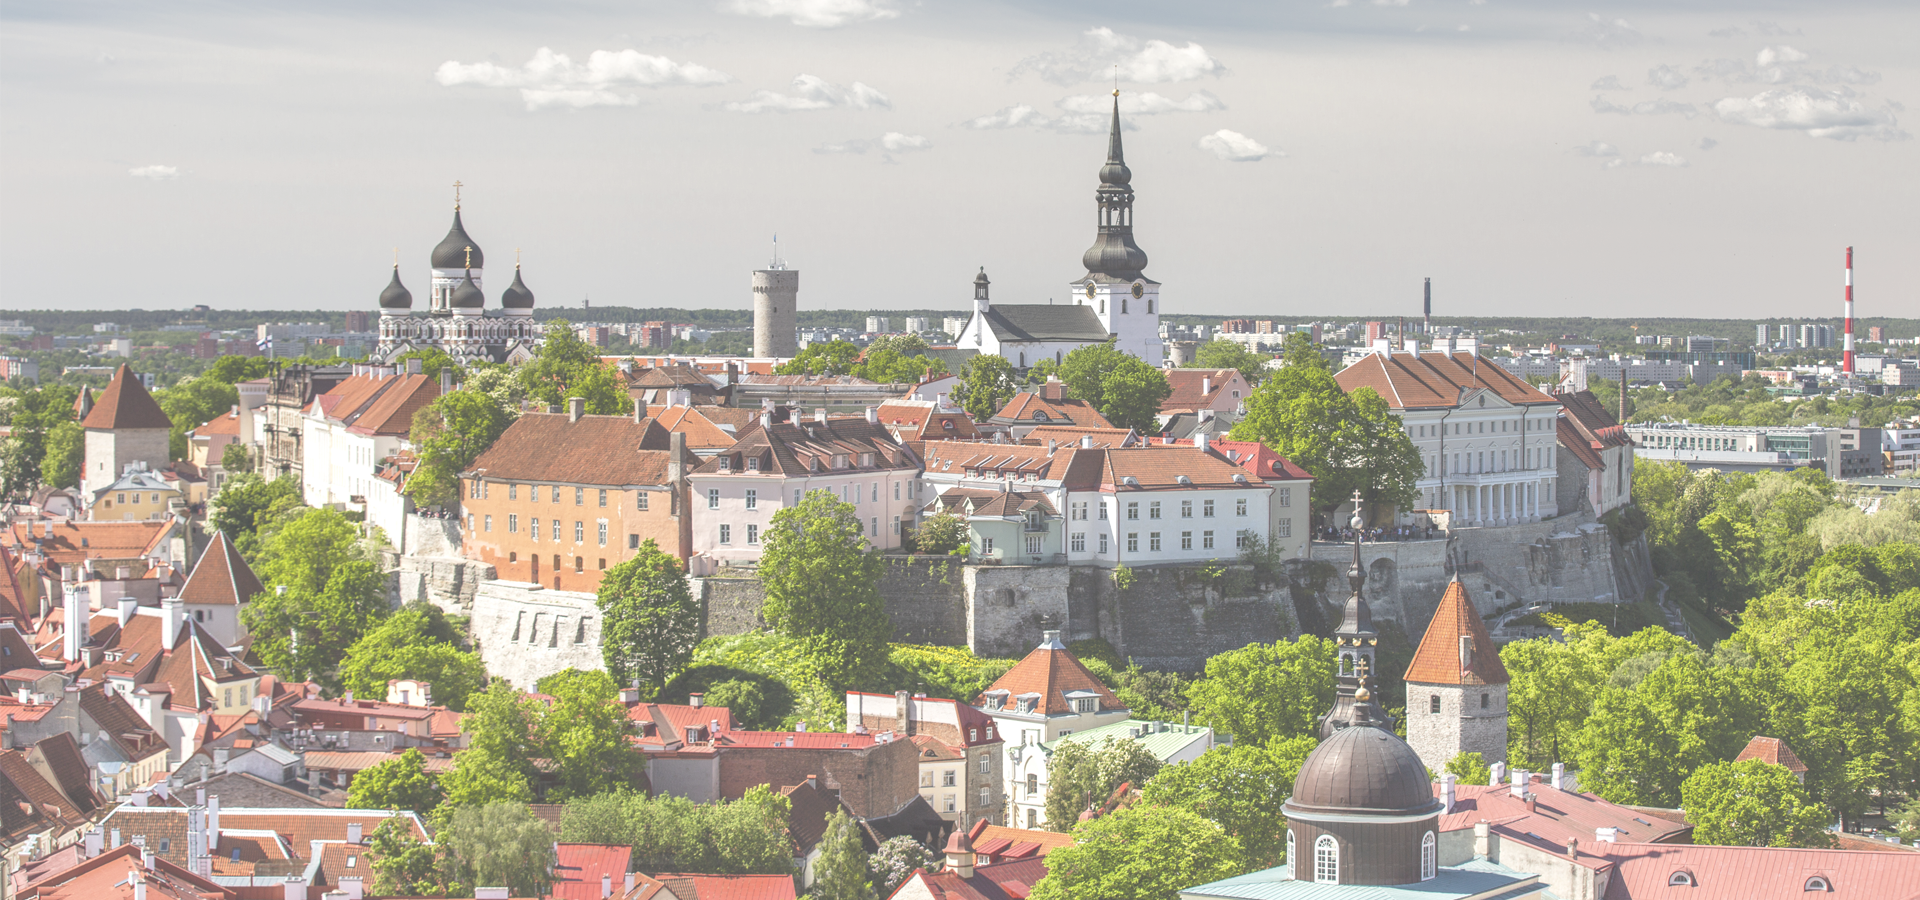 <b>Tallinn, Harju County, Estonia</b>